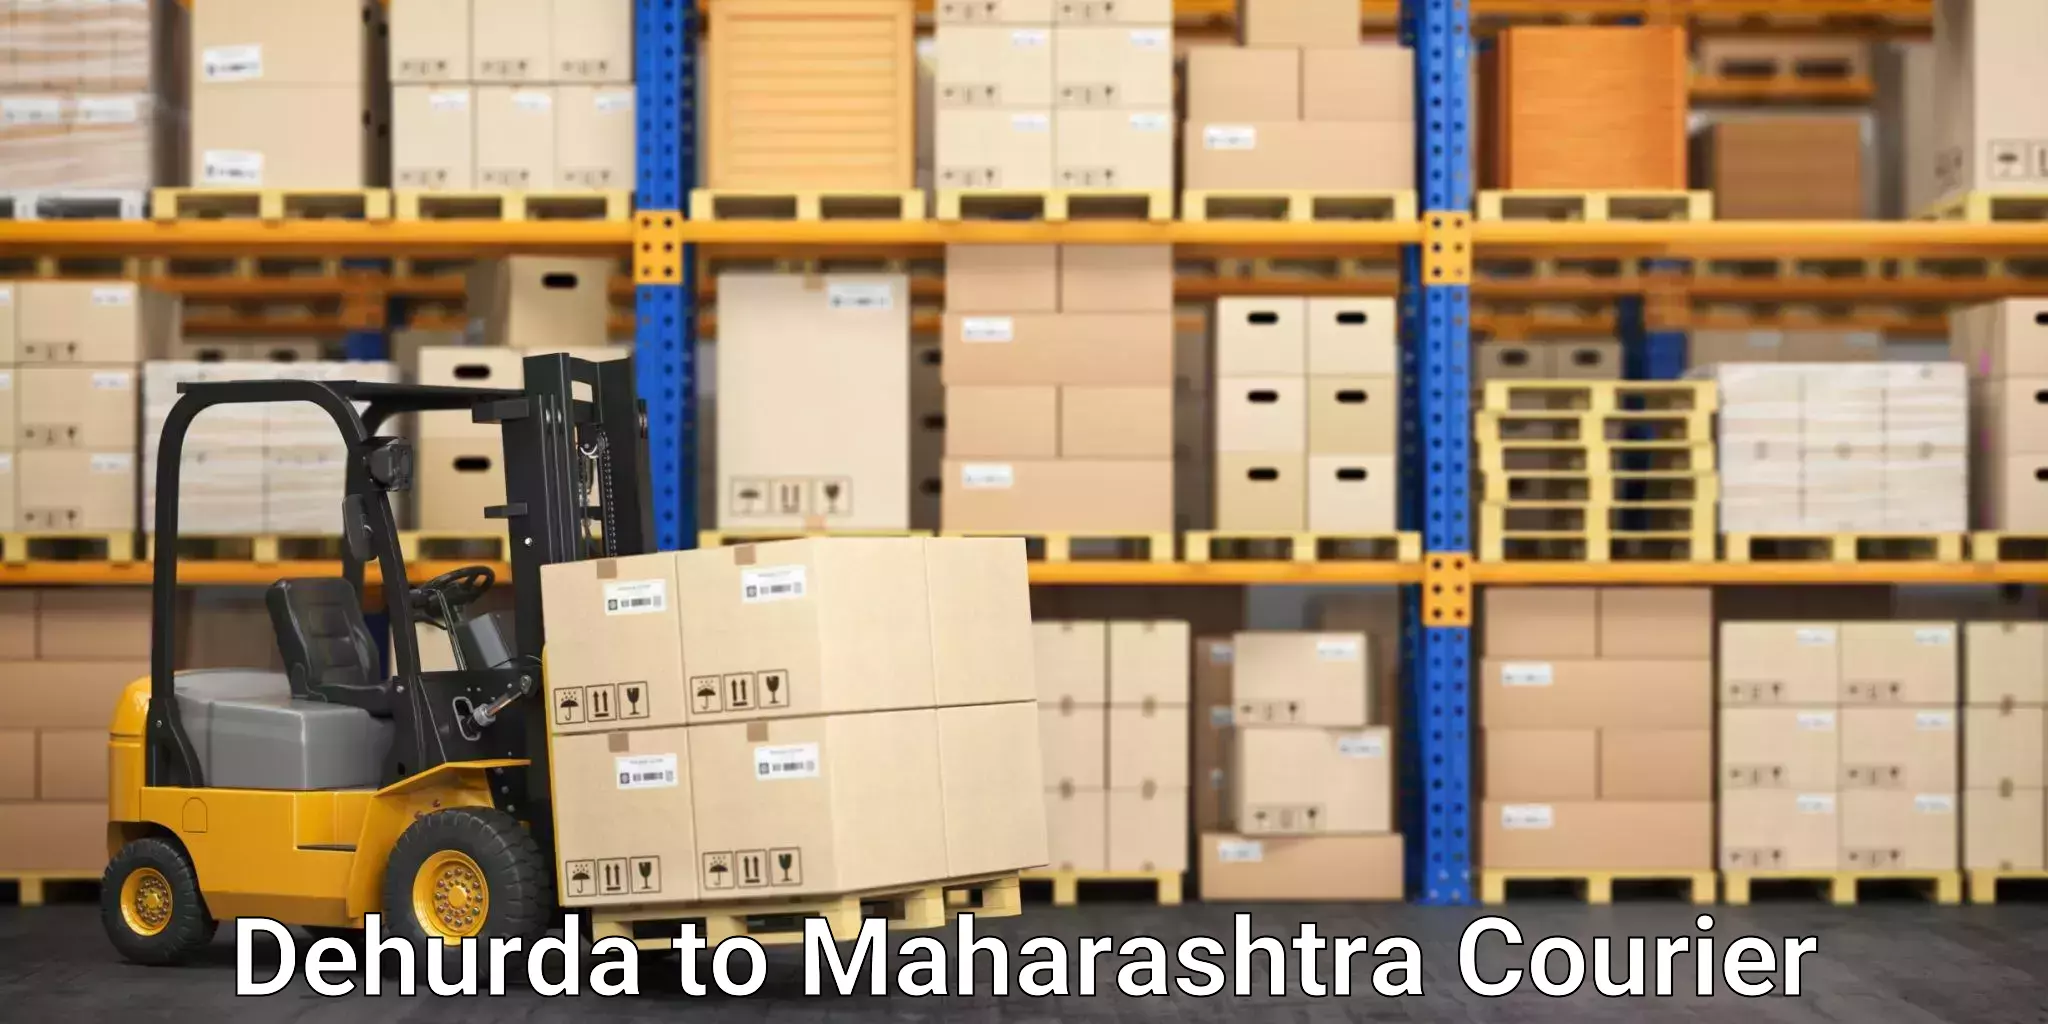 Efficient freight service Dehurda to Jasai